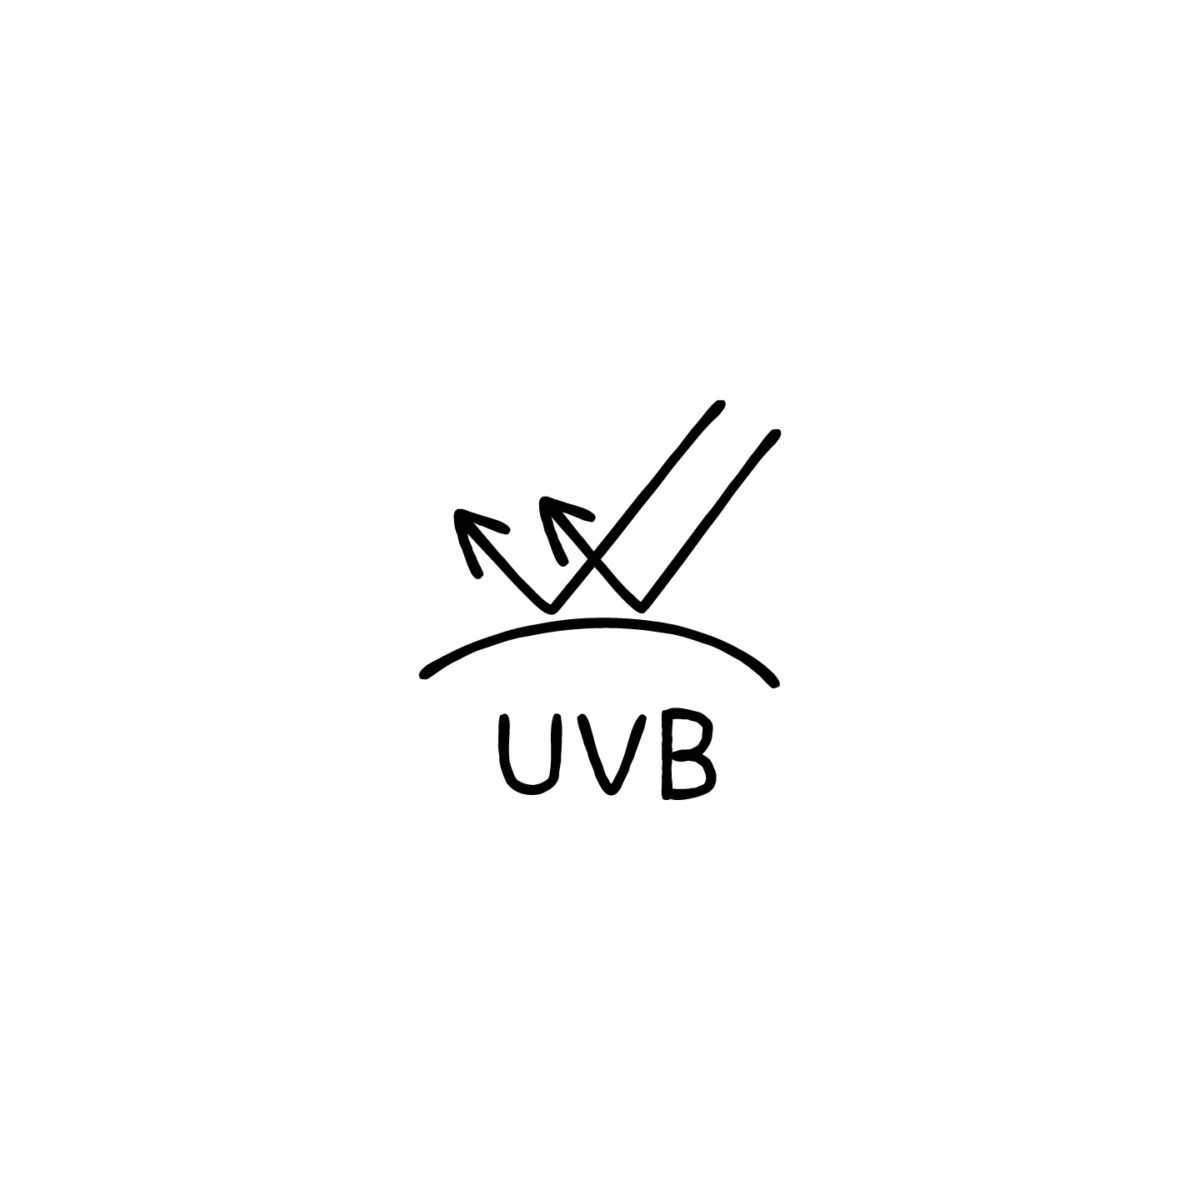 UVカットUVBのアイコンのアイキャッチ用画像